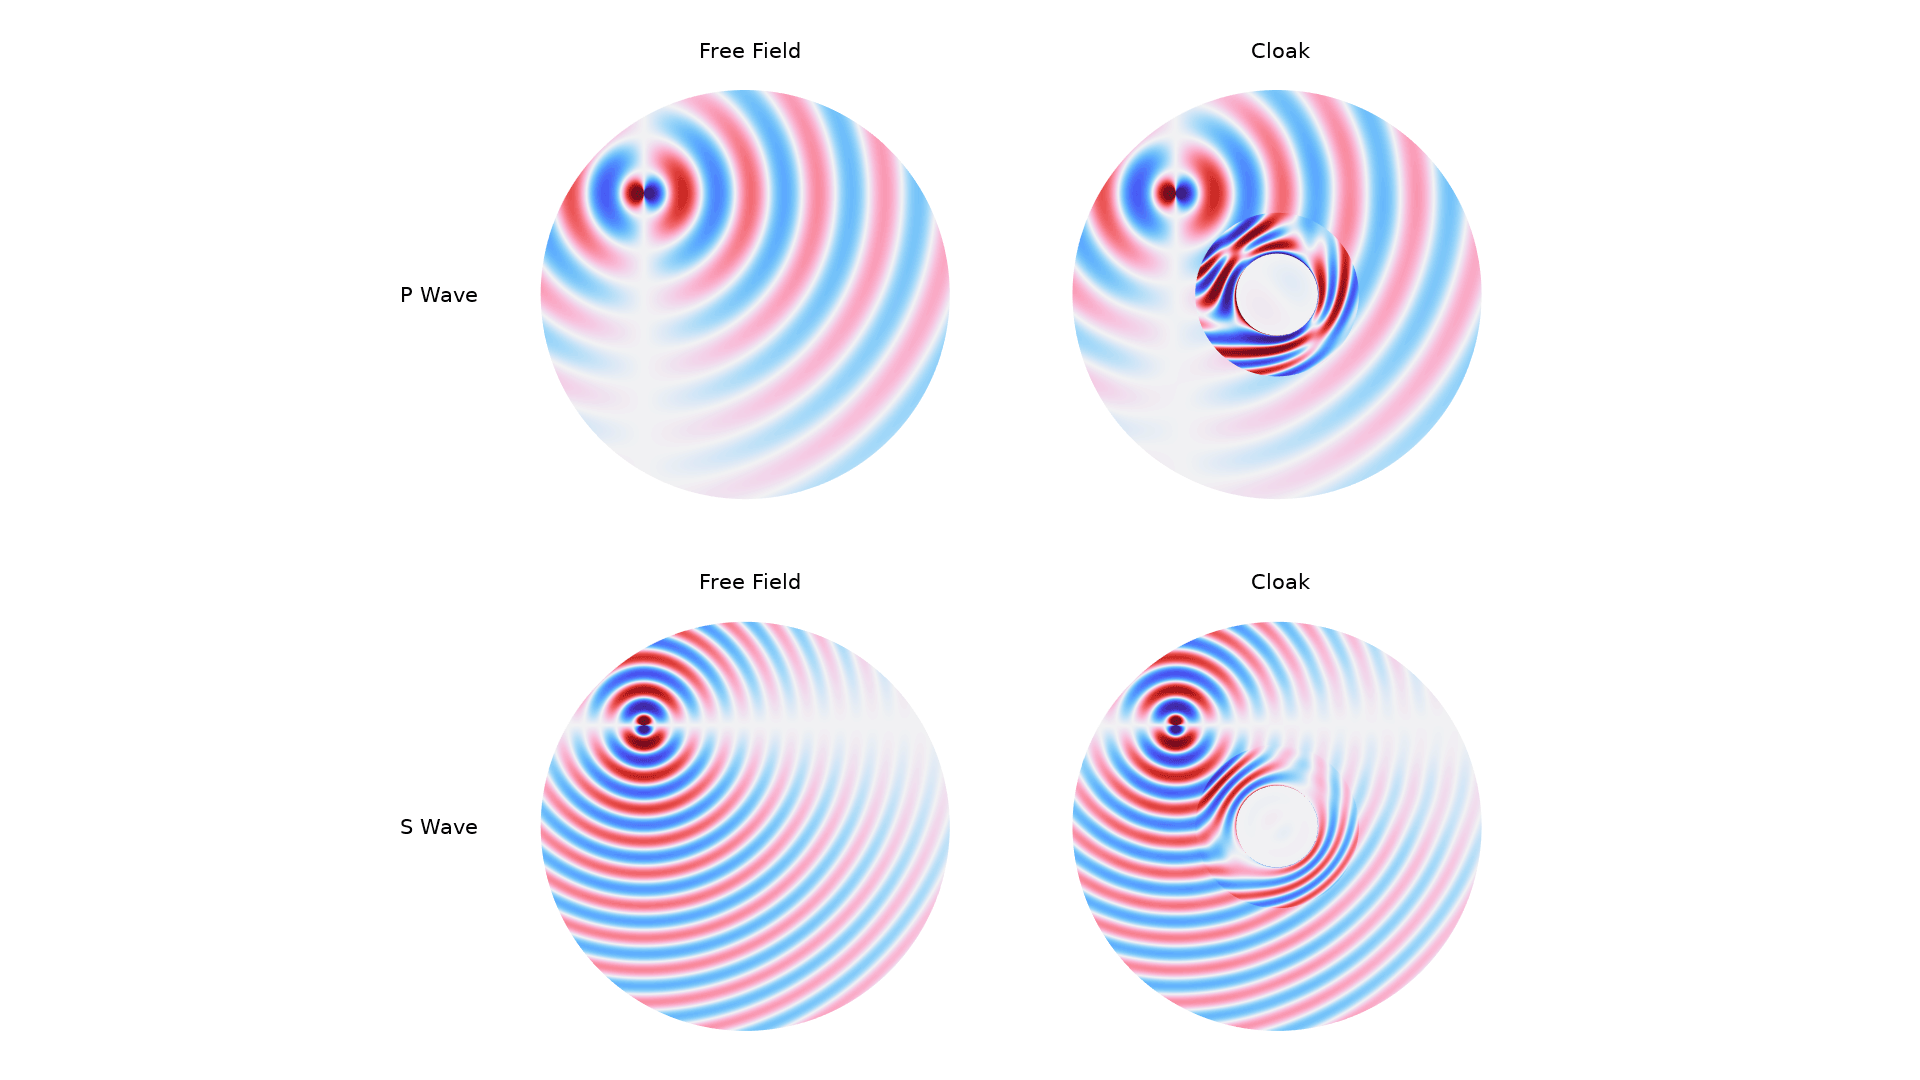 以 Wave Light 颜色表显示的弹性斗篷模型的四个绘图。